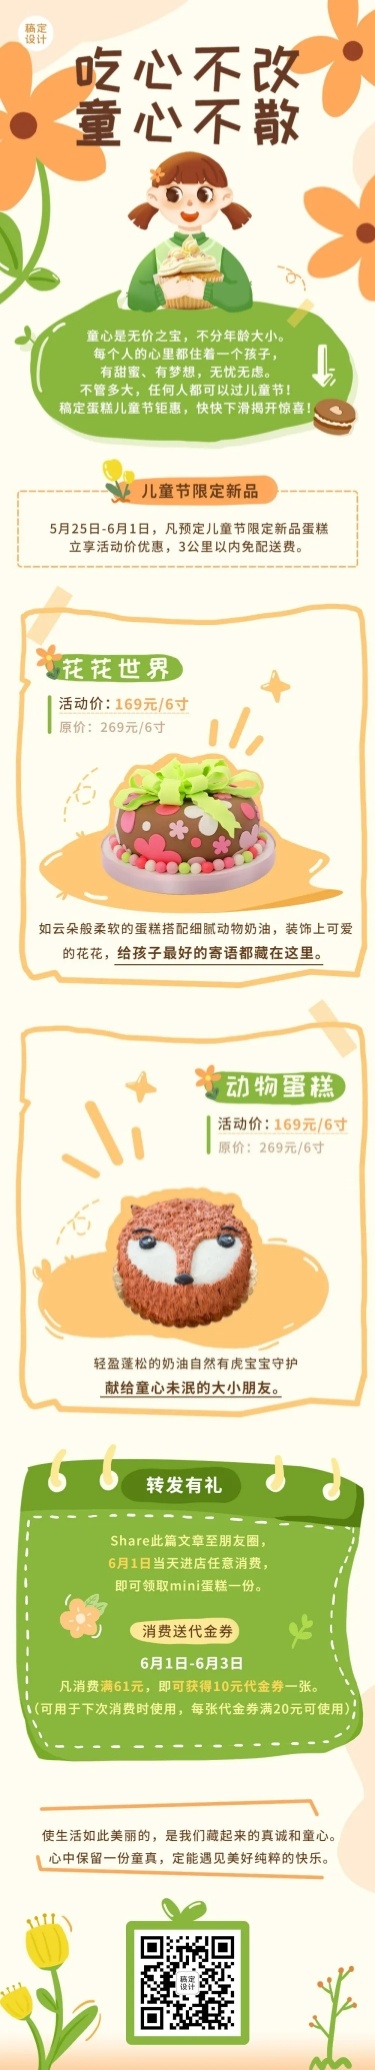 手绘风儿童节餐饮蛋糕烘焙活动营销文章长图